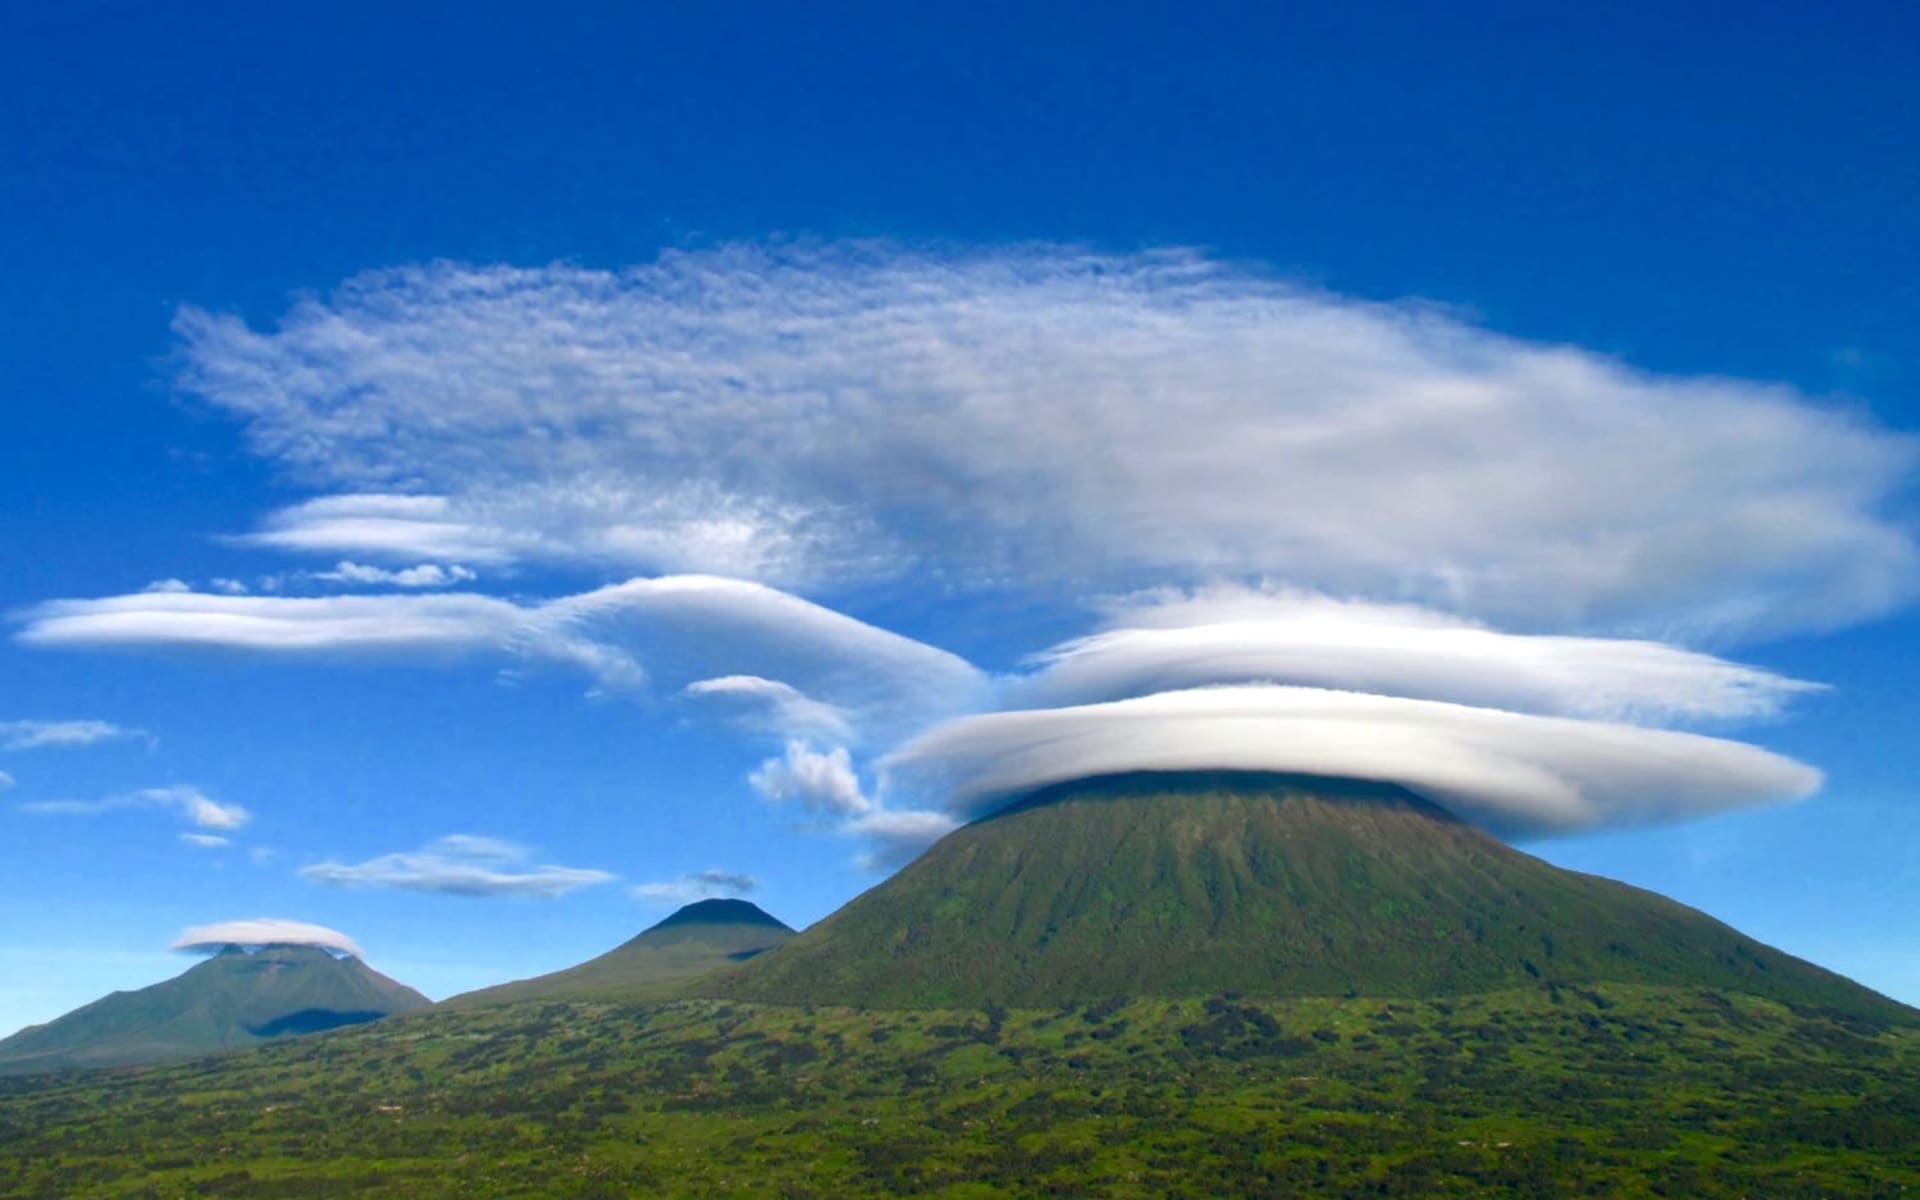 Rwanda_virunga_volcanoes-1